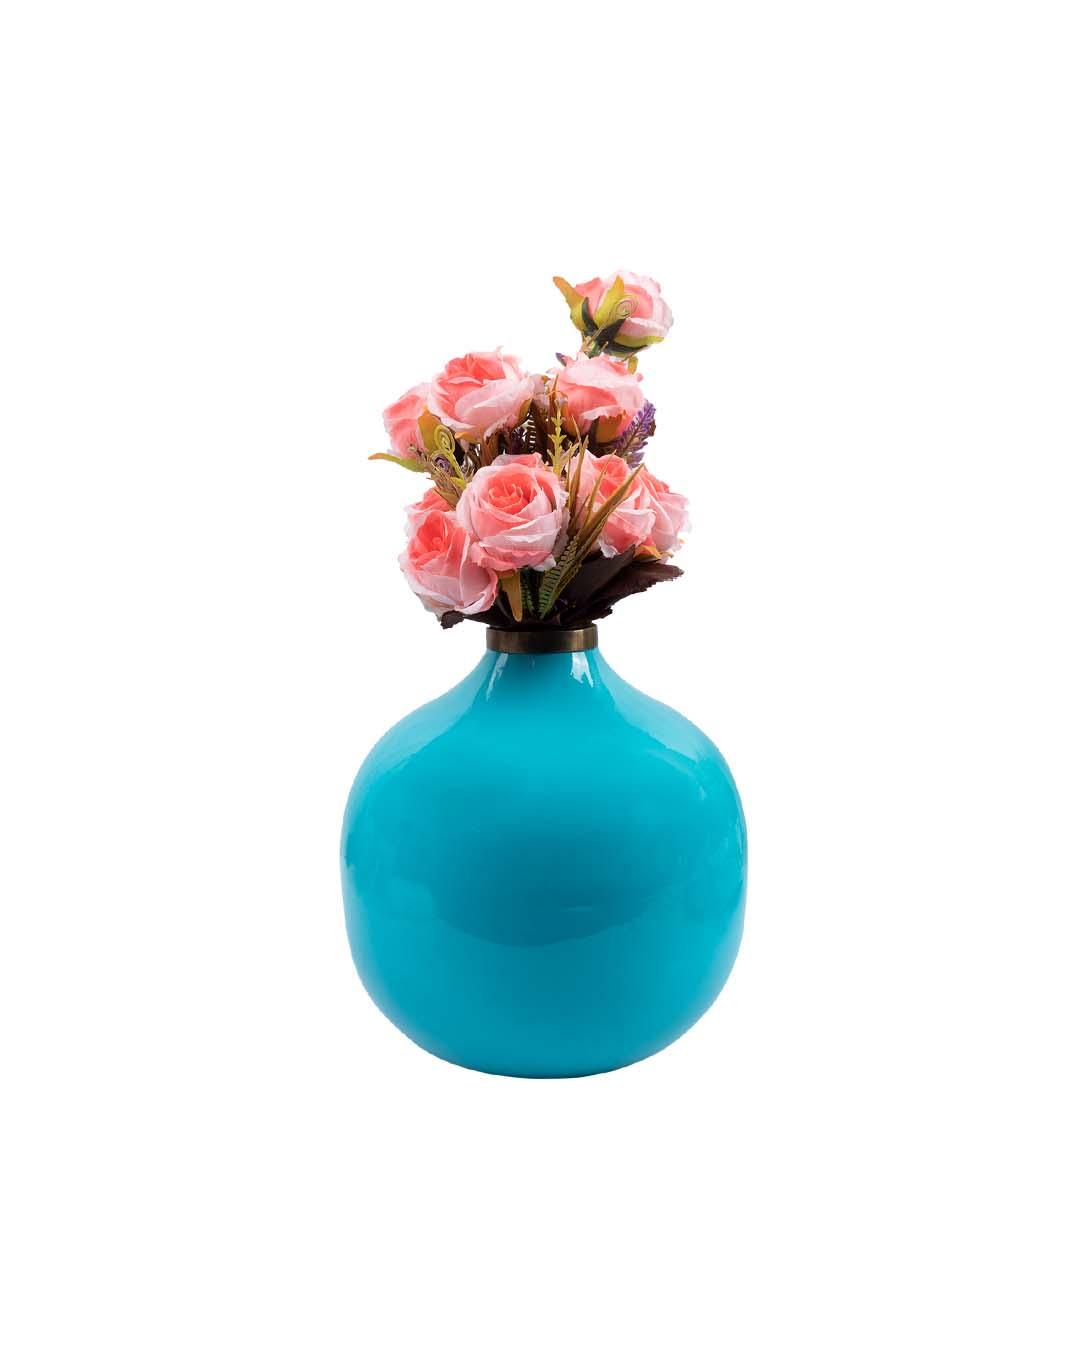 VON CASA Decorative Flower Vase, Diwali Décor, Turquoise, Iron - VON CASA